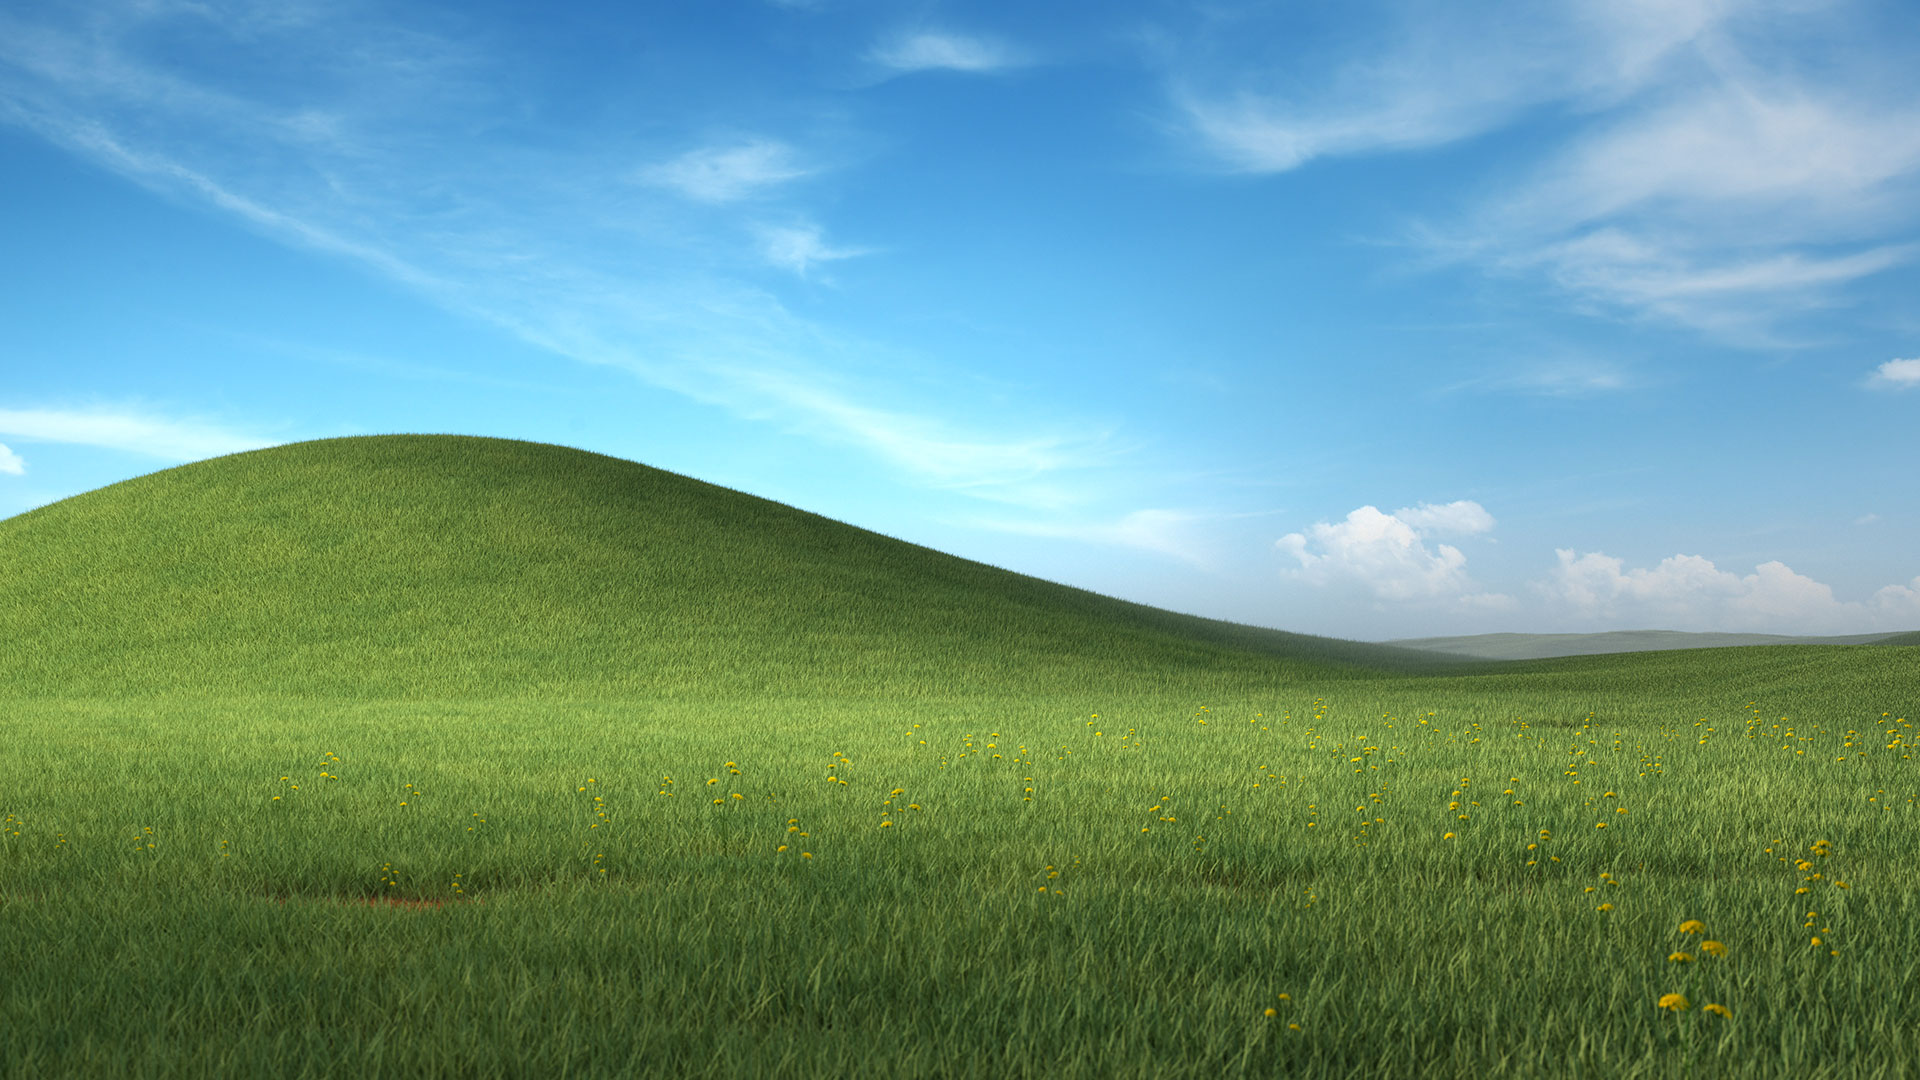 Microsoft giới thiệu bộ ảnh hình nền hoài niệm Windows XP marketingreview.vn